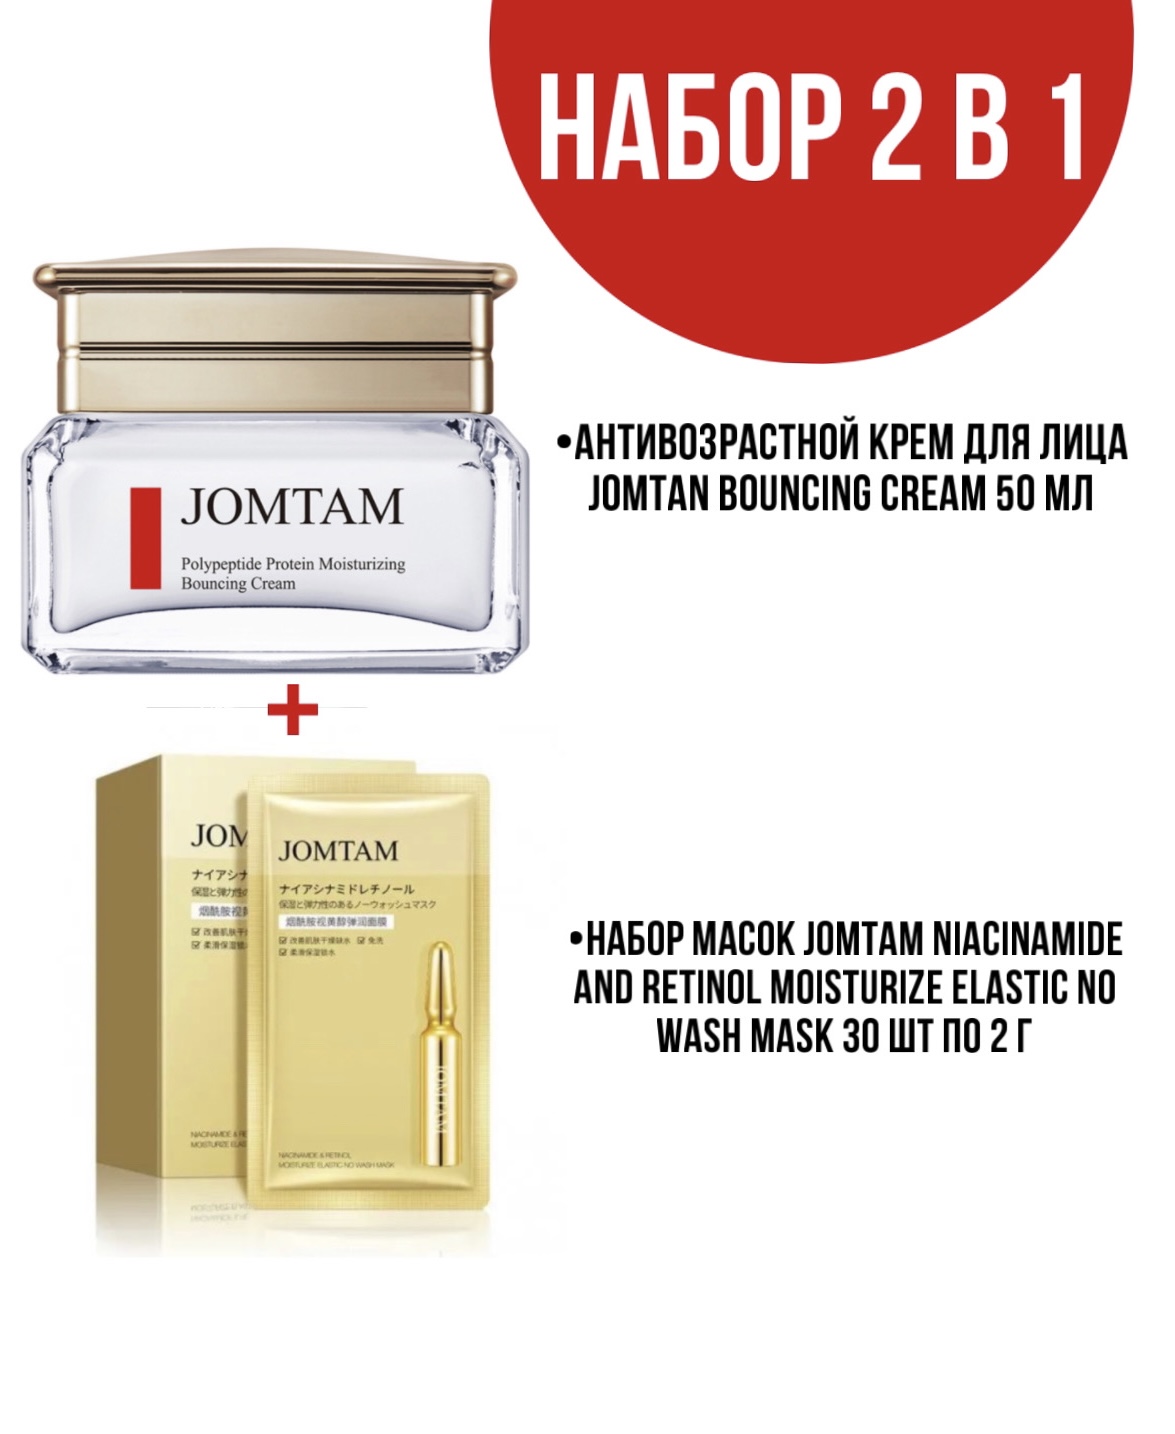 Крем Jomtam Bouncing Cream для лица 50 мл и набор масок Jomtam Niacinamide 30 шт по 2 г мои девять жизней